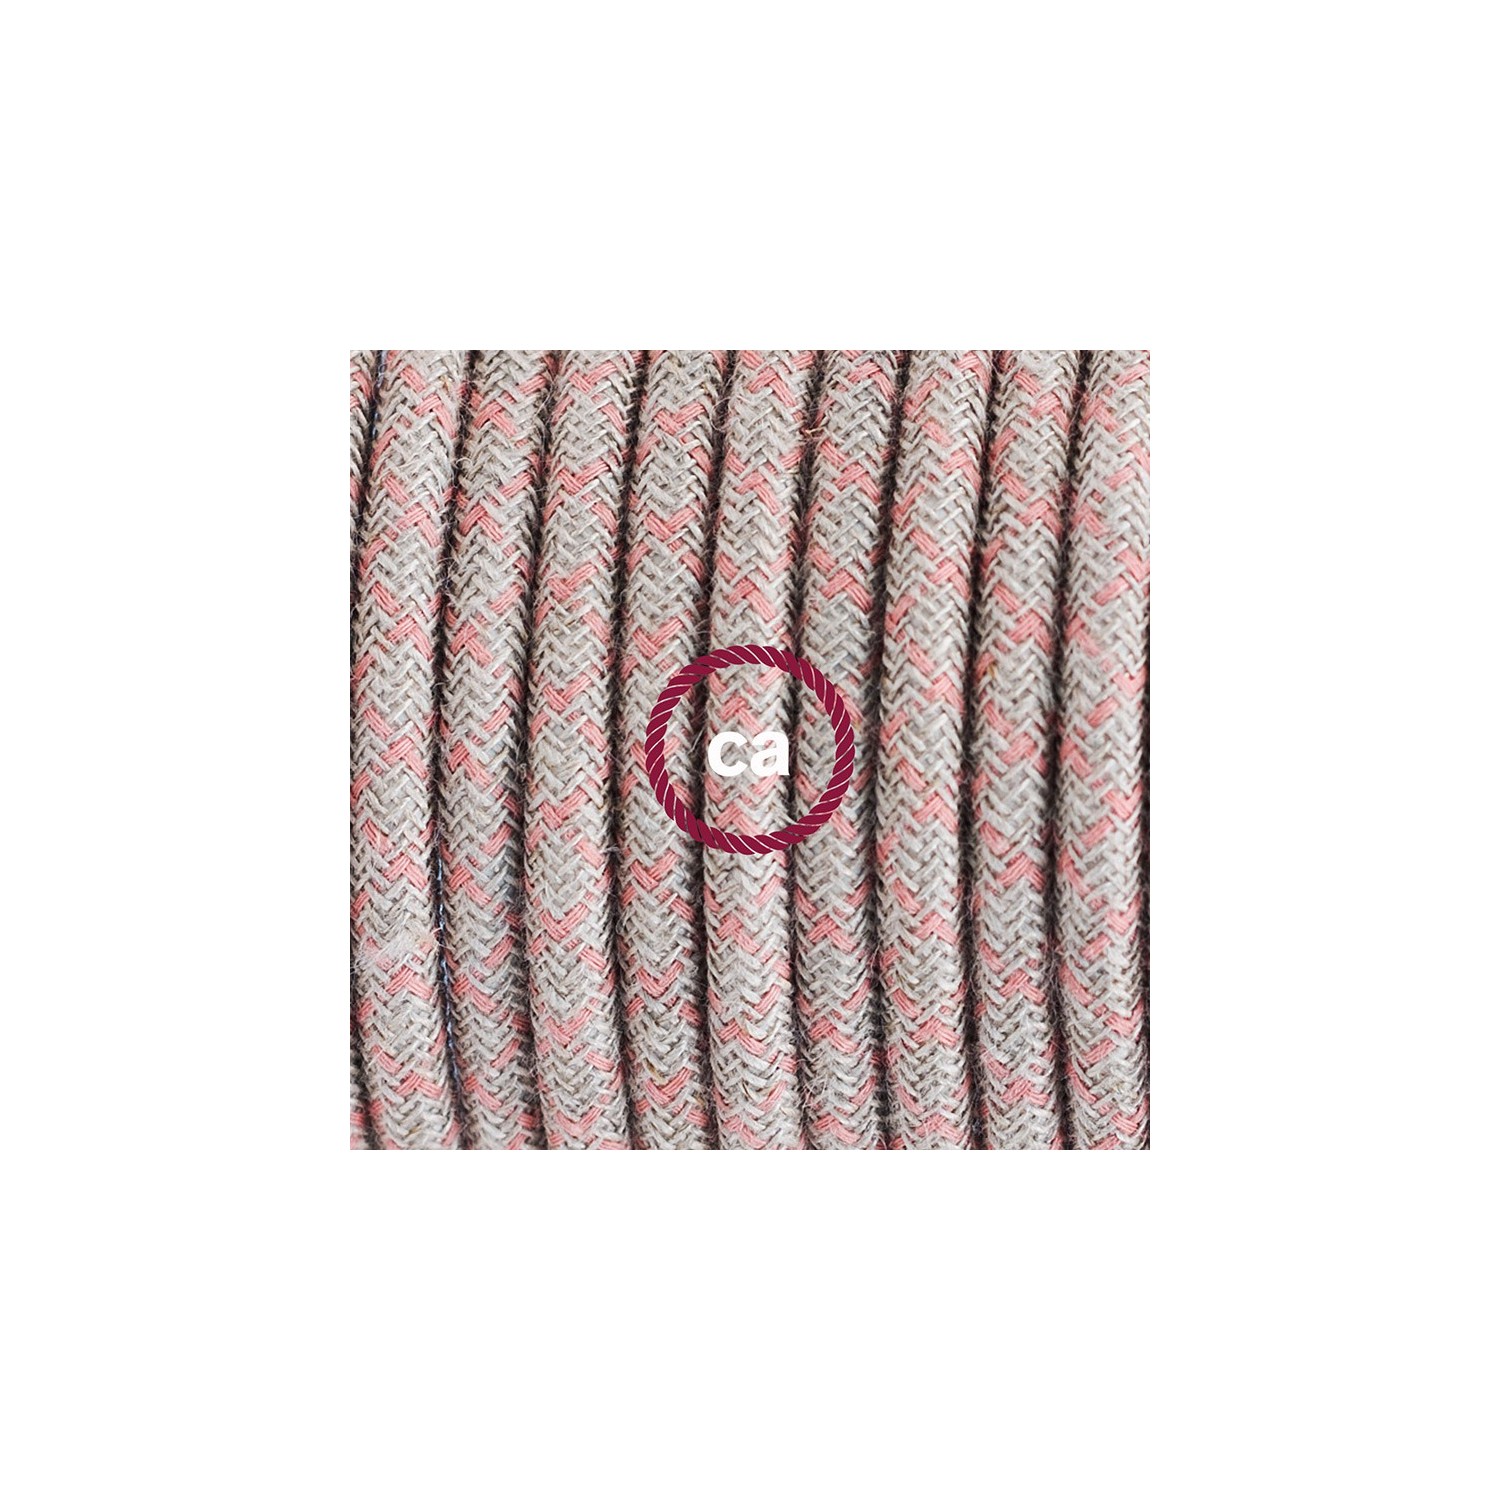 Komplet s stikalom, RD61 romb, rožnati naravni lan in bombaž 1,80 m. Izberite barvo vtikača in stikala.